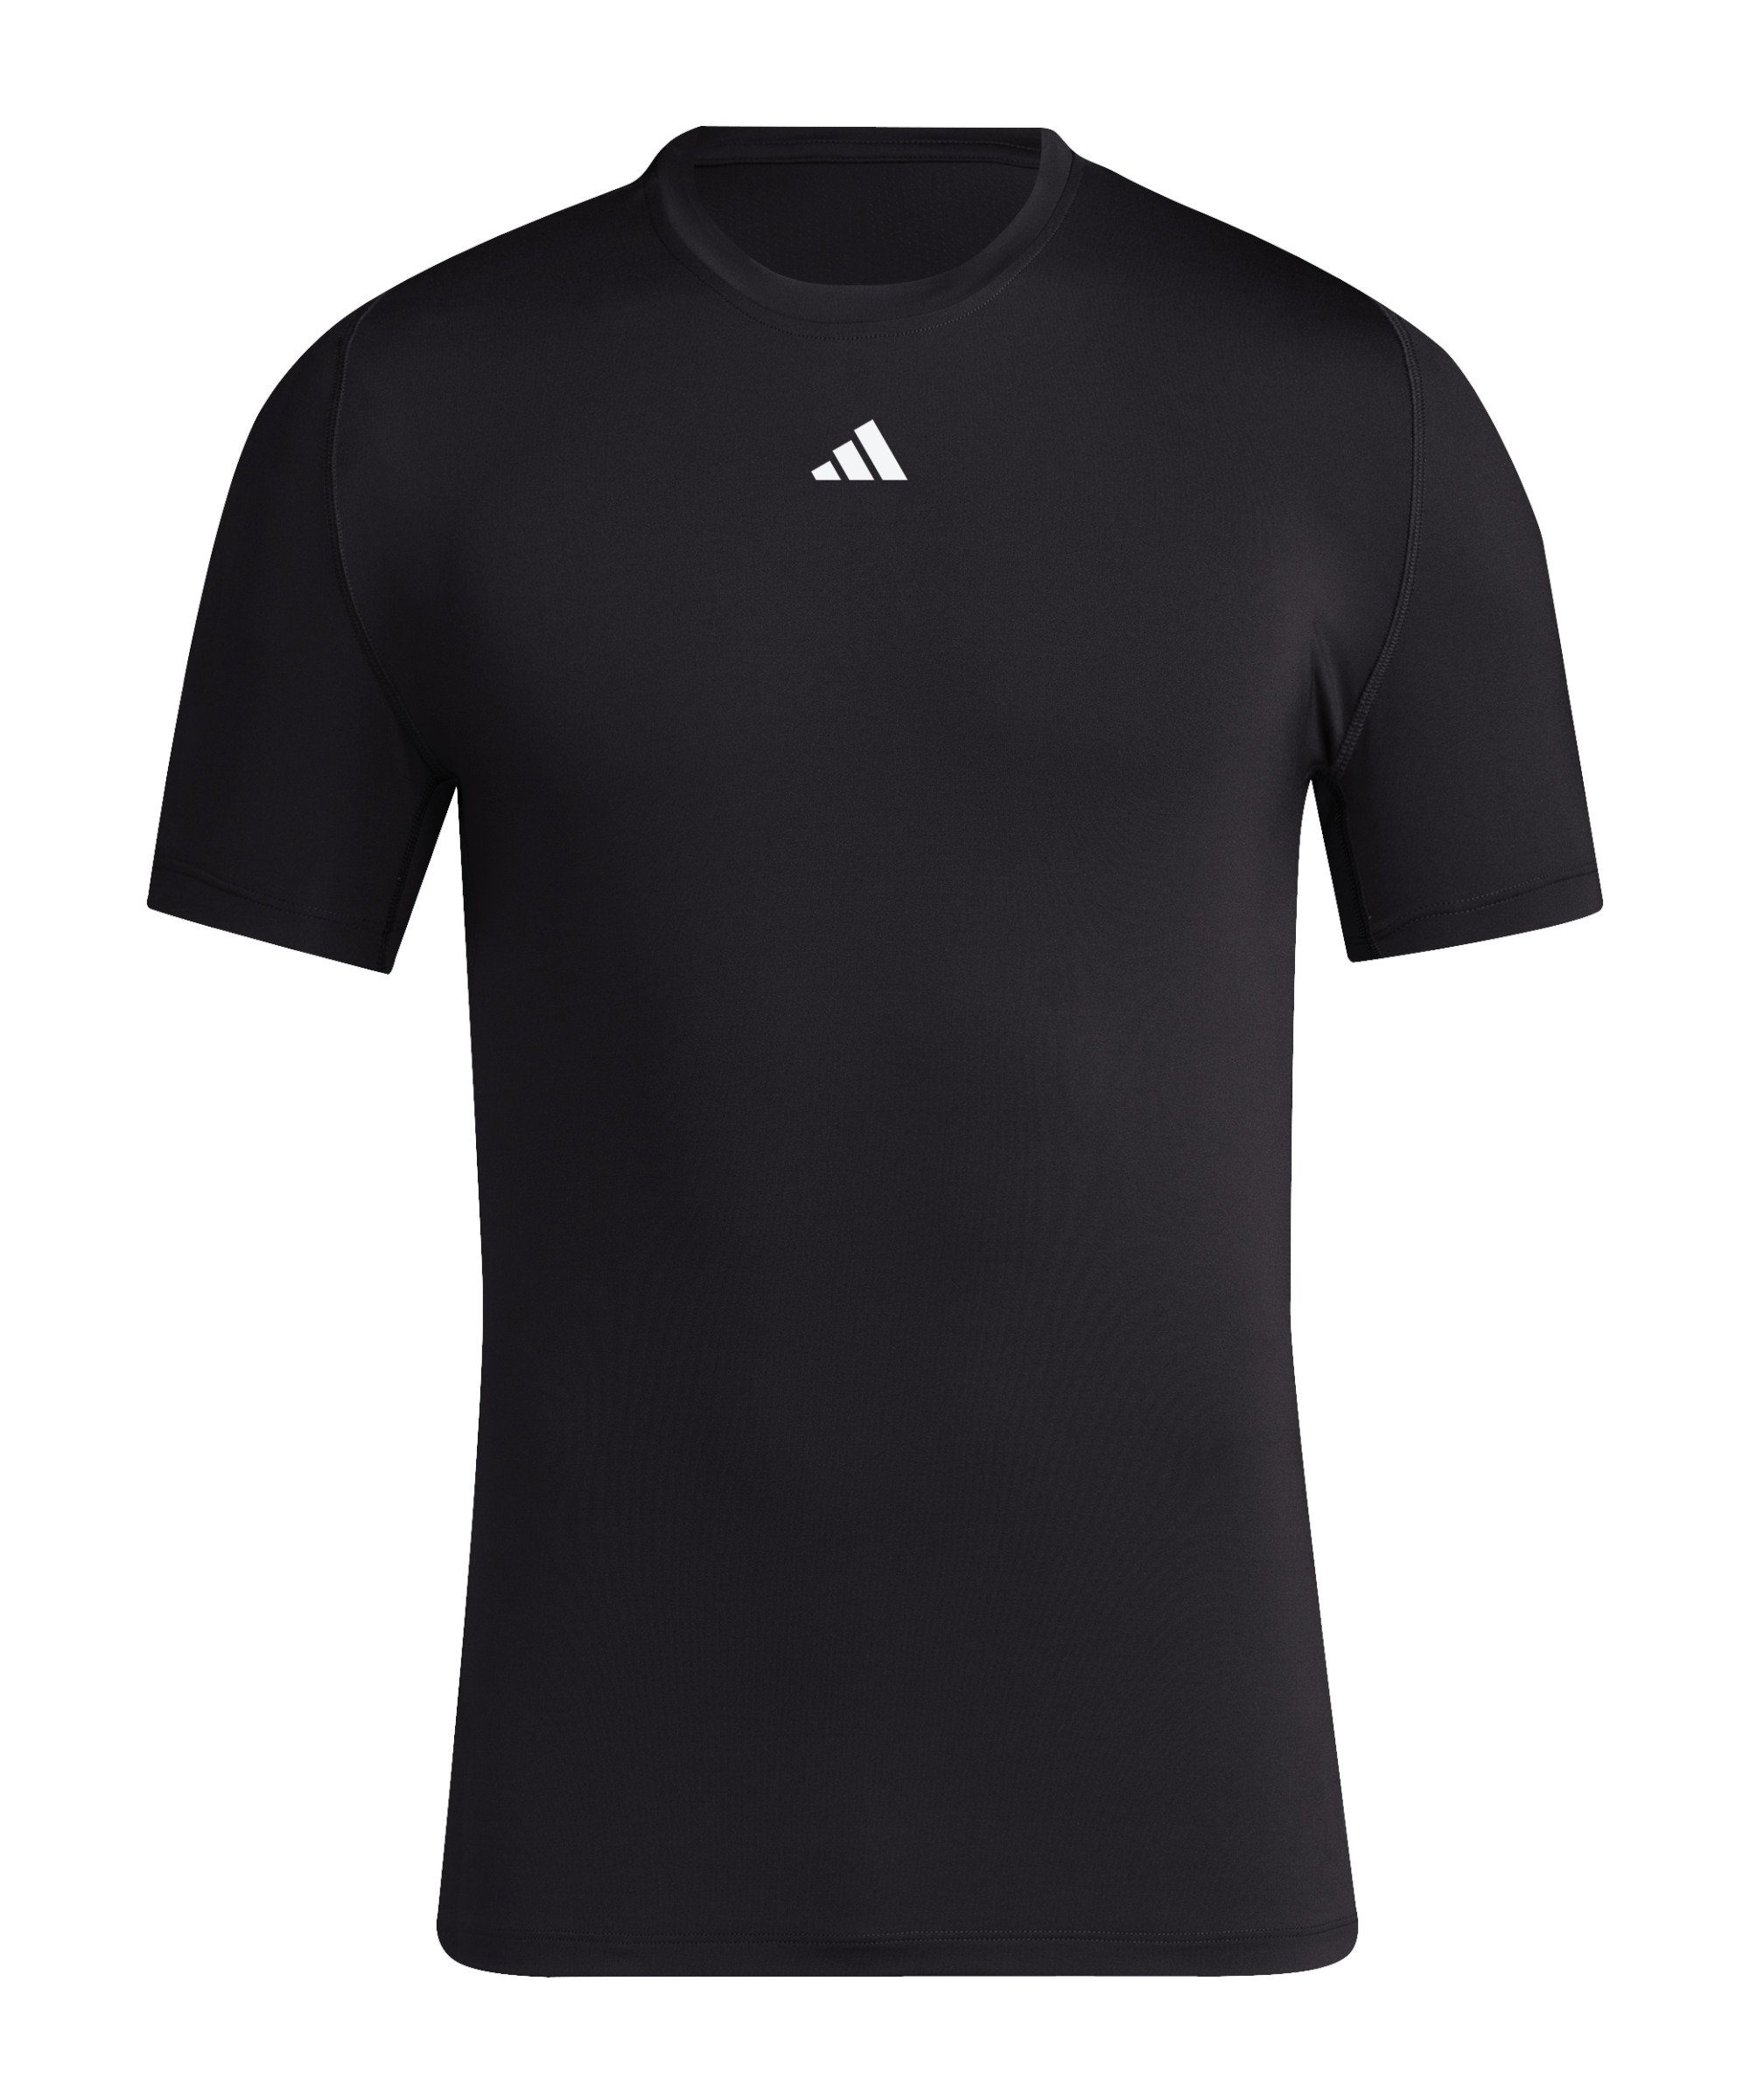 Tech-Fit schwarz adidas Funktionsshirt T-Shirt default Performance